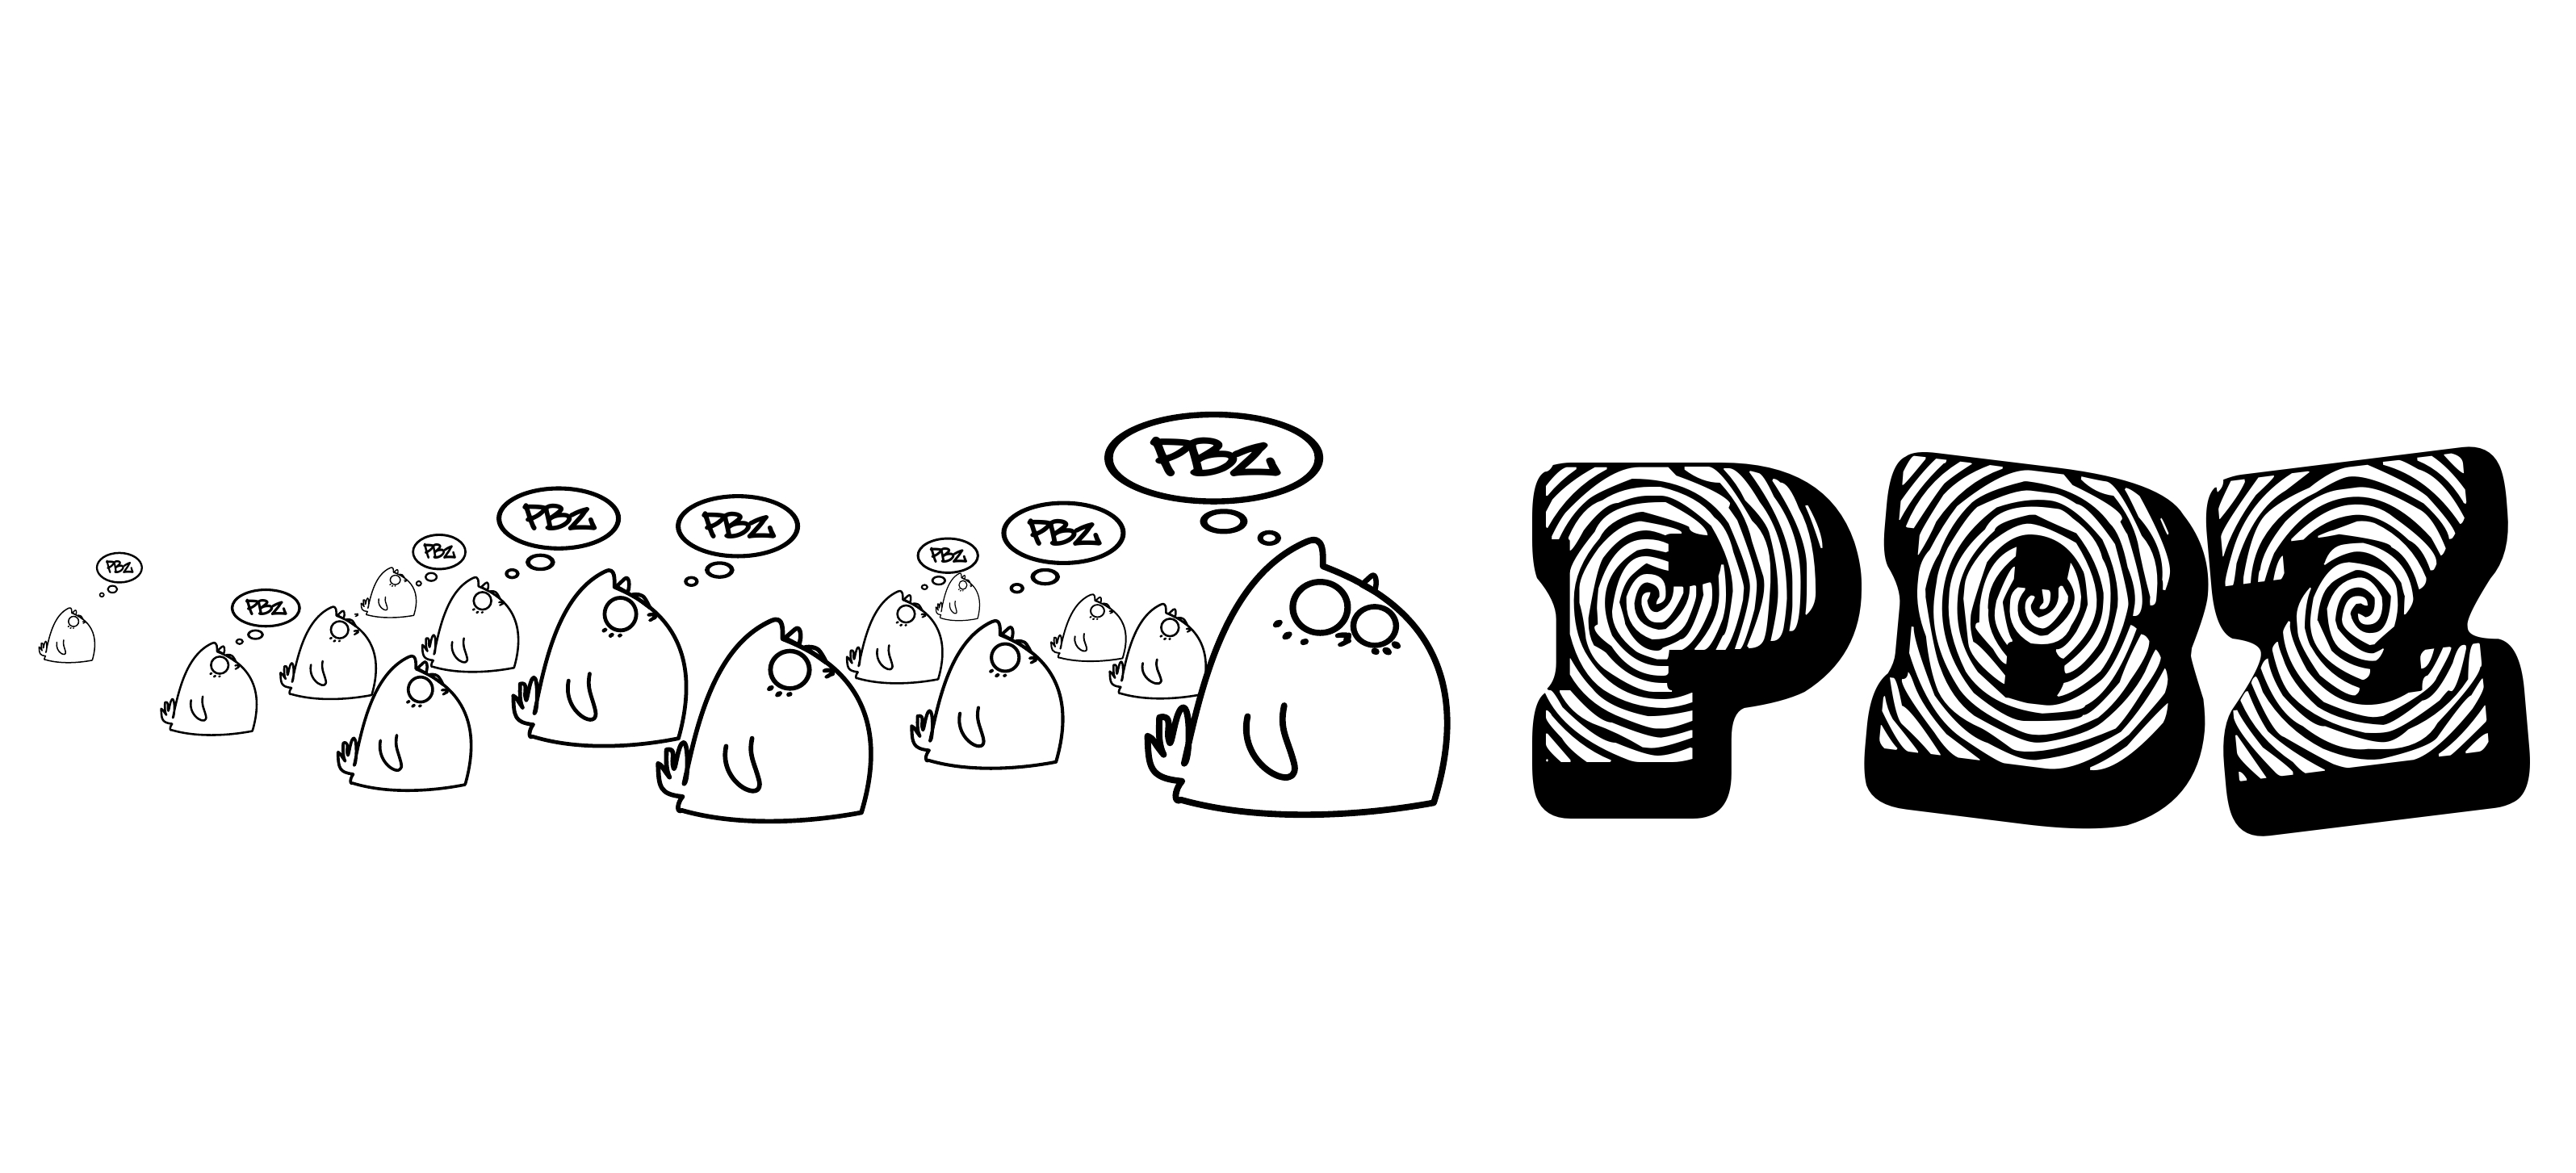 Groupe PBZ, visuel pour stickers et t-shirts, créé par Thomas Sanson